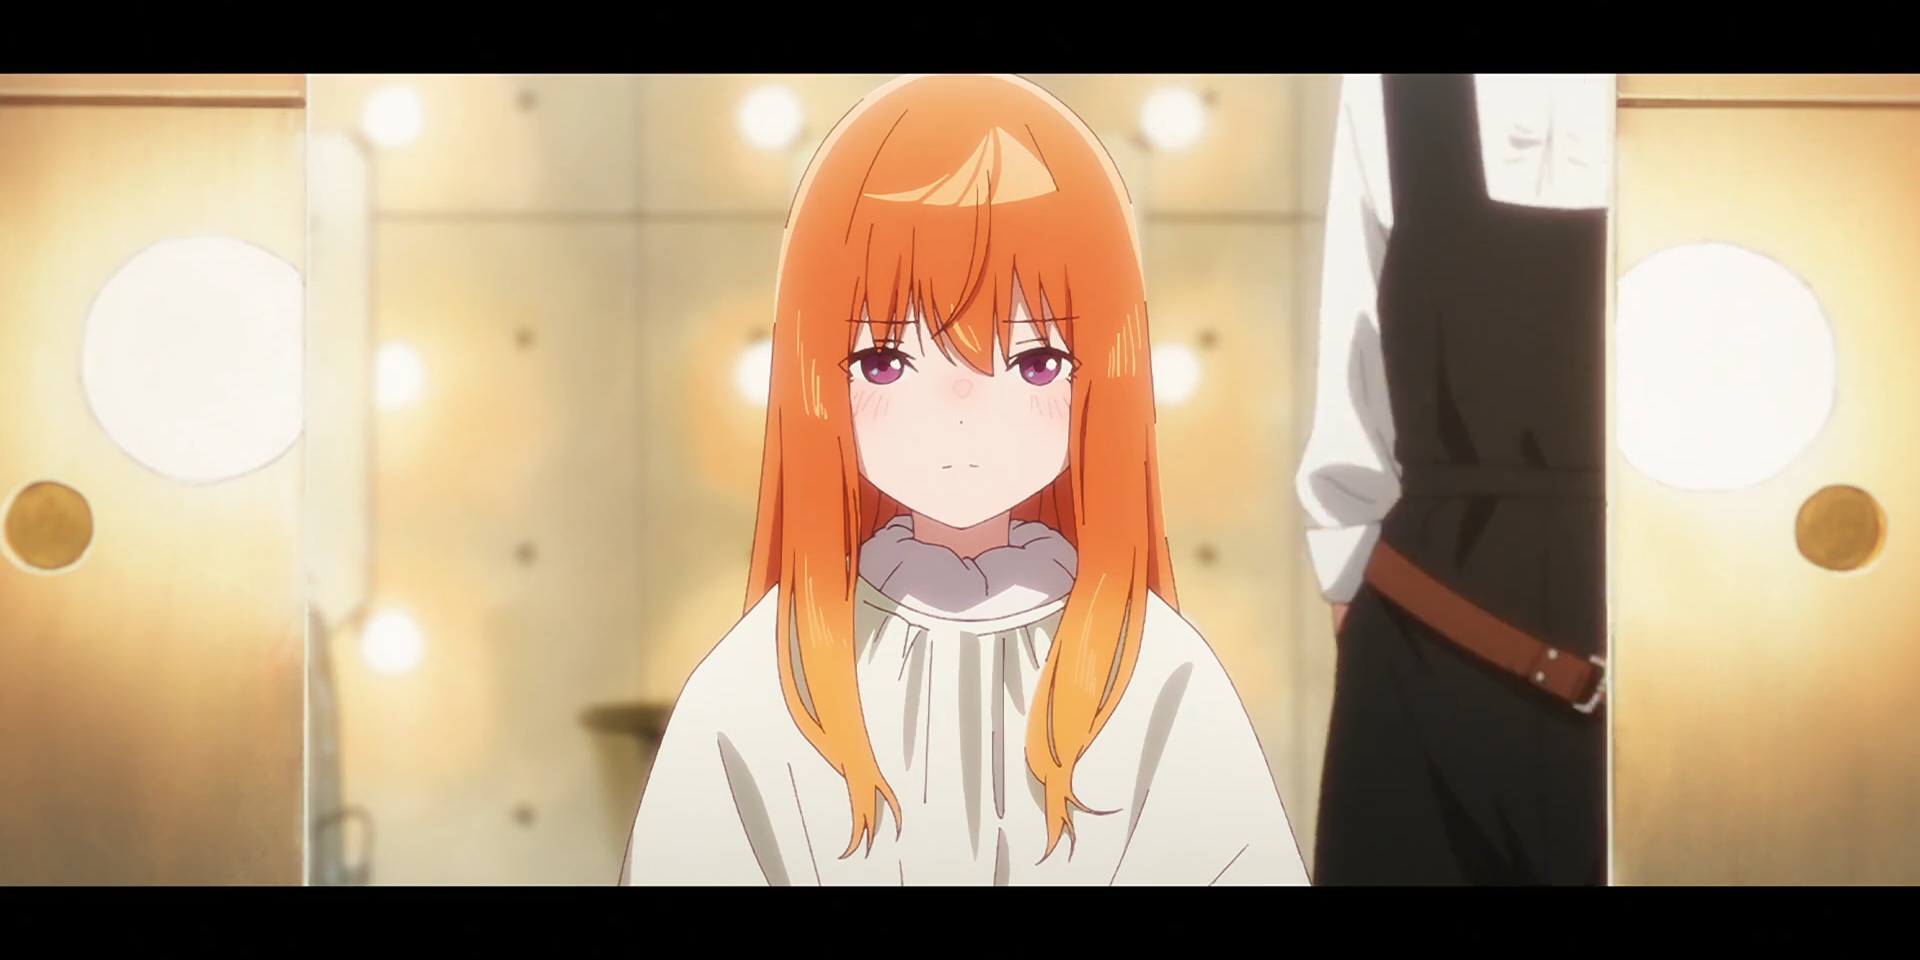 Mei, com seu cabelo laranja natural, está sentada em um cabeleireiro com uma lona sobre ela.